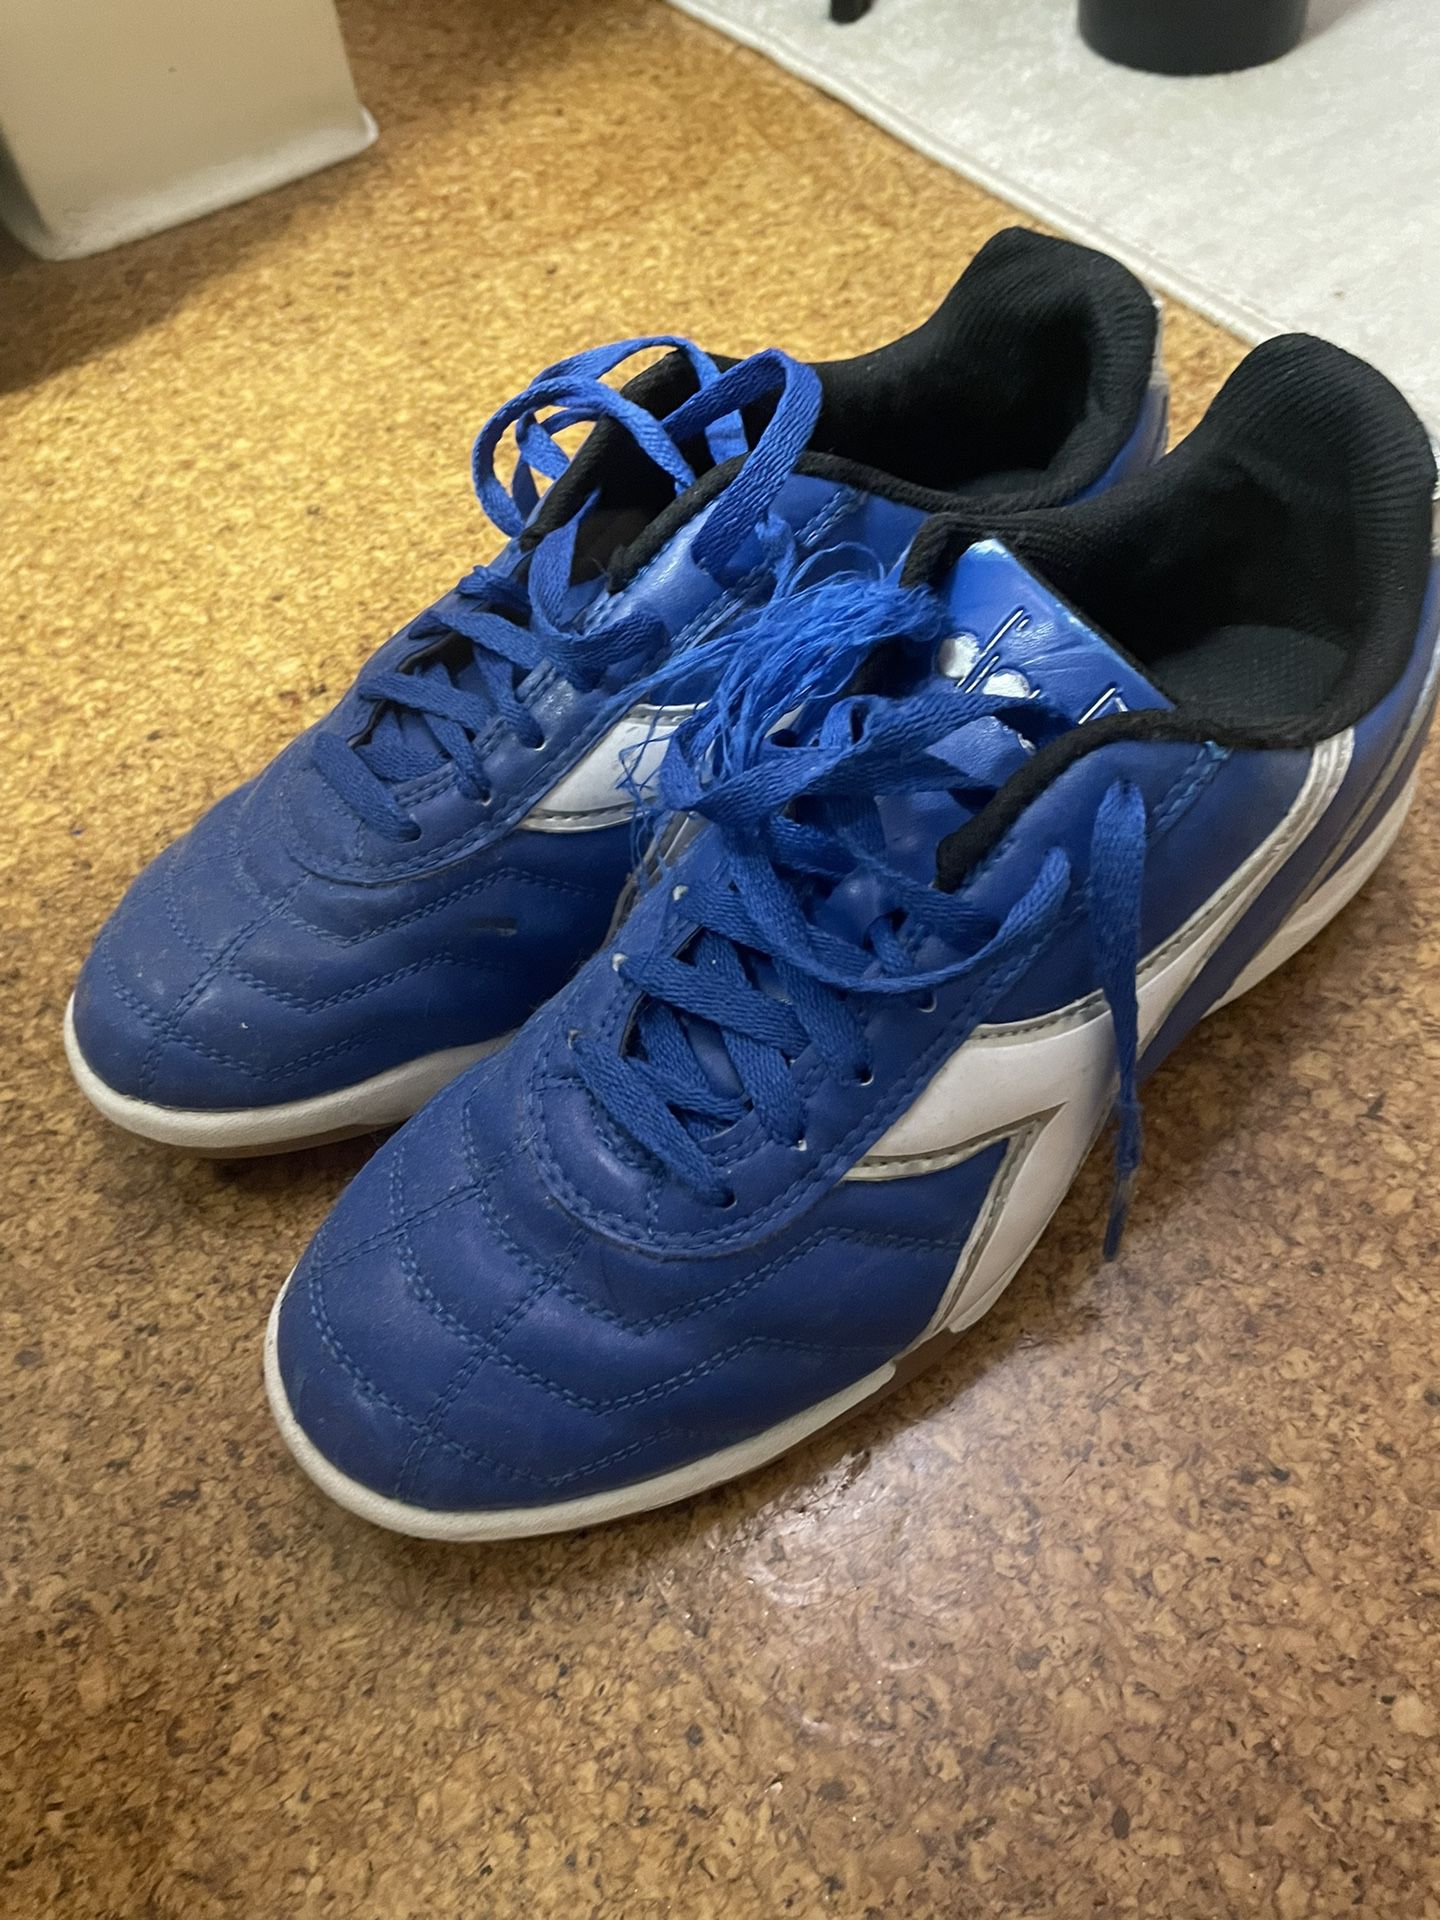 Diadora Indoor Soccer Shoes Size 9.5